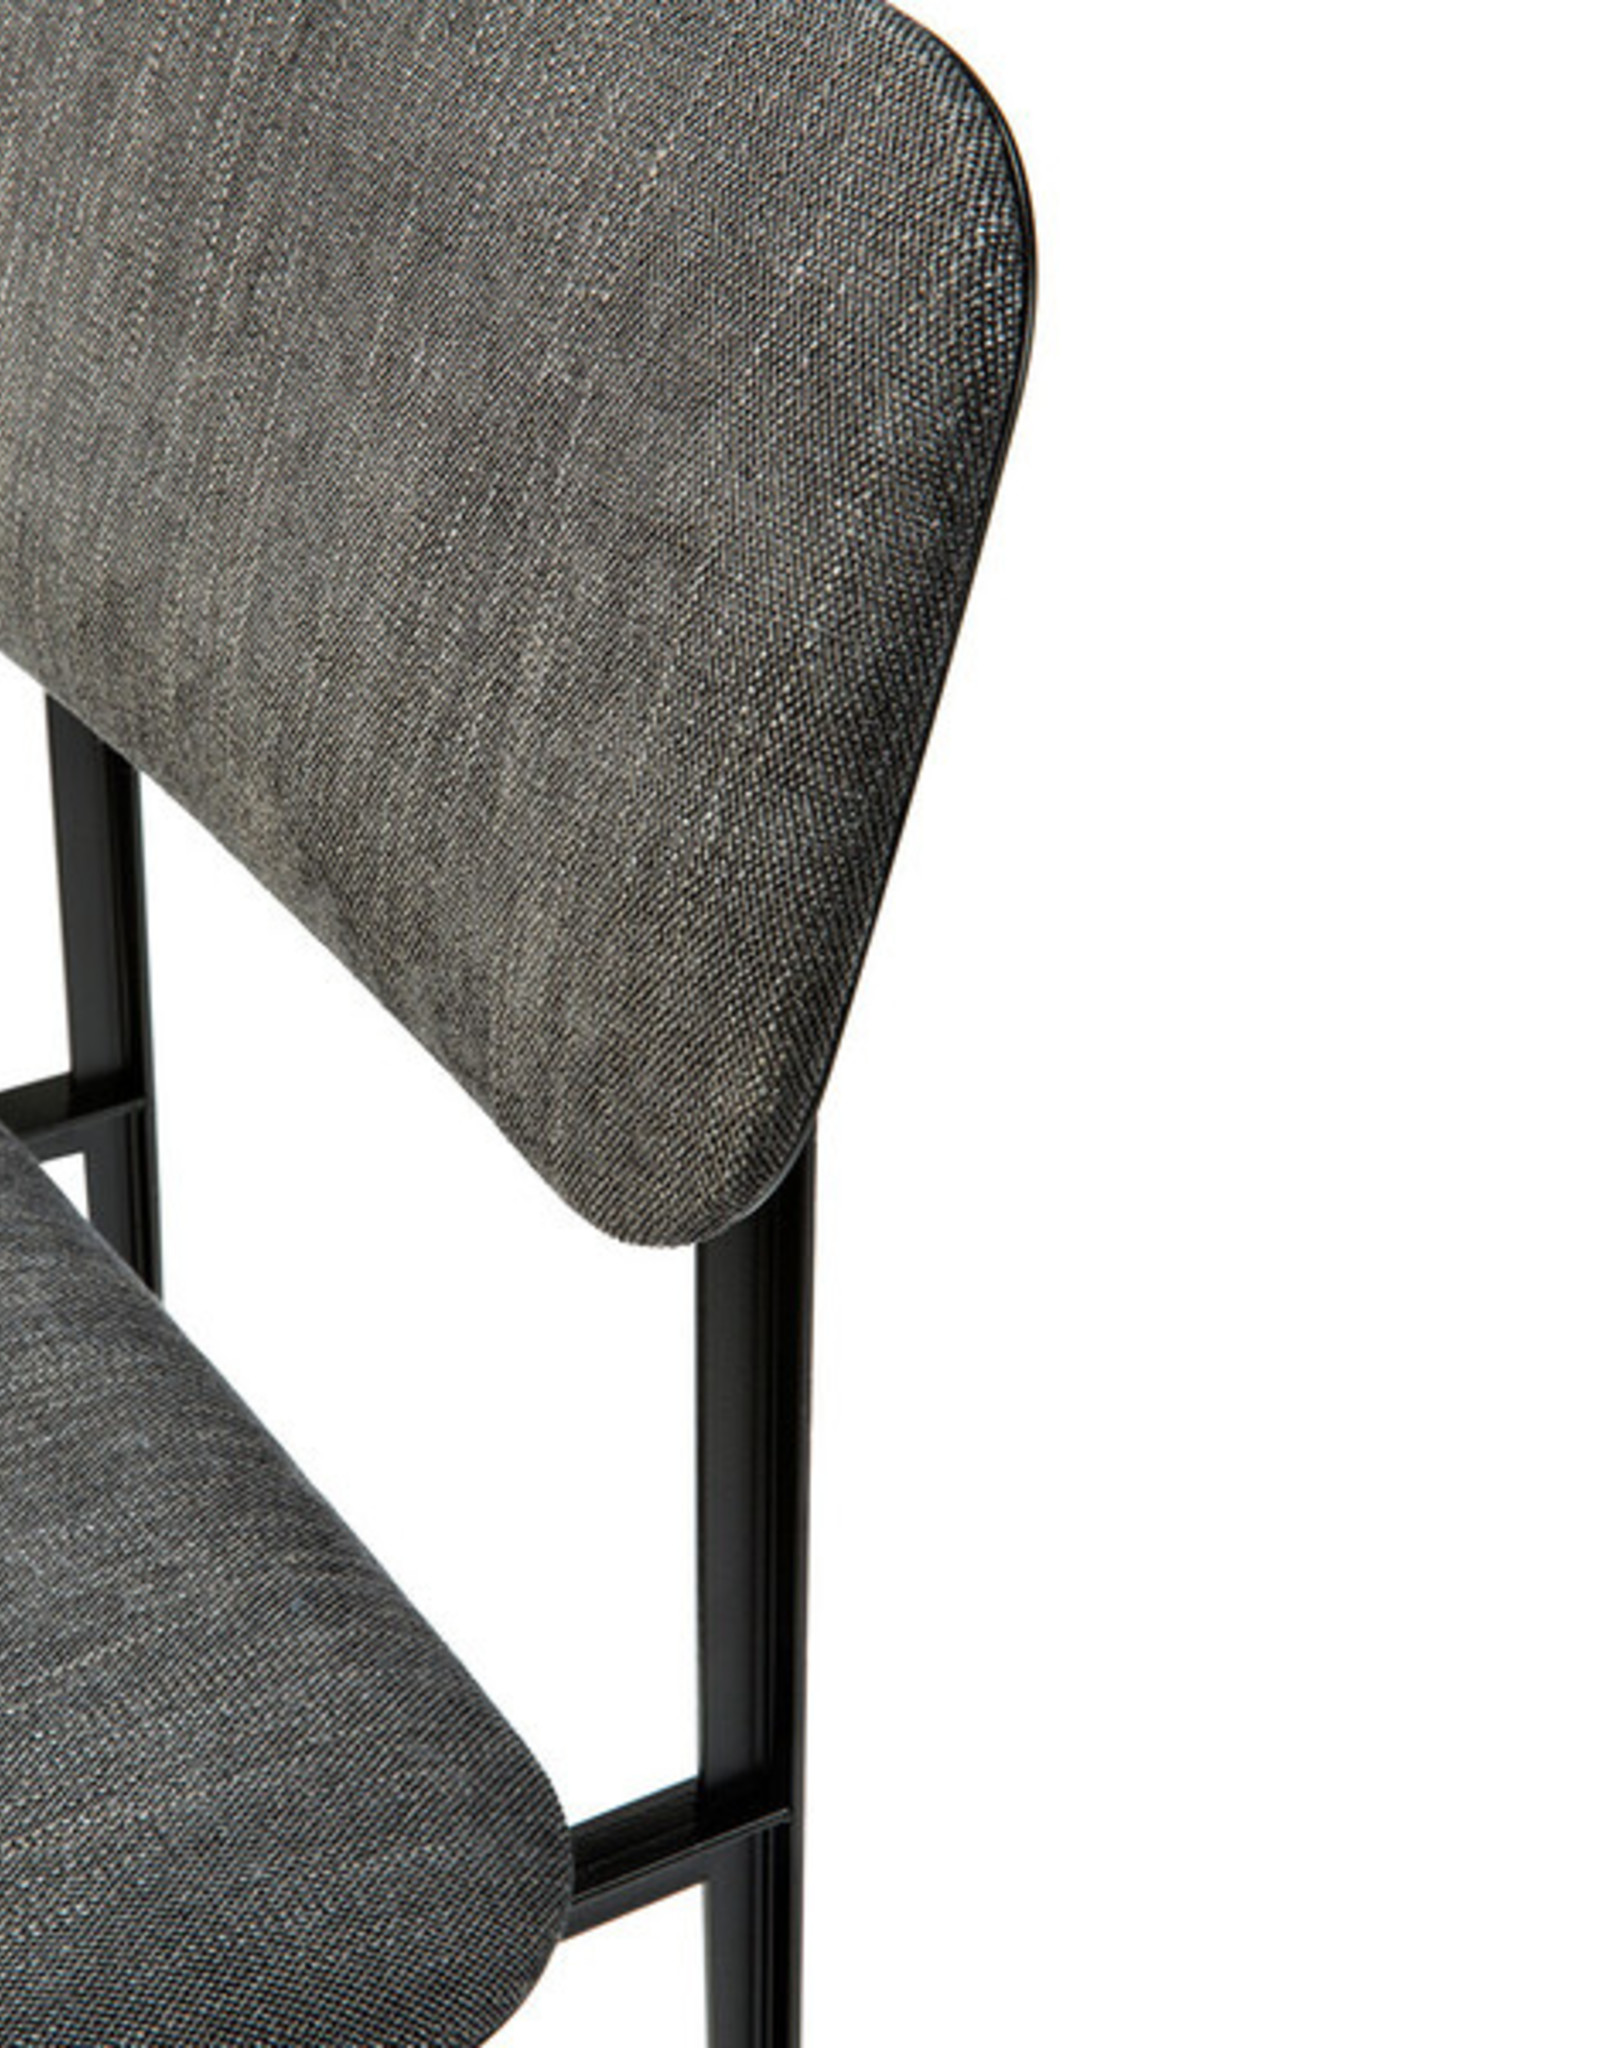 DC dining chair - dark grey